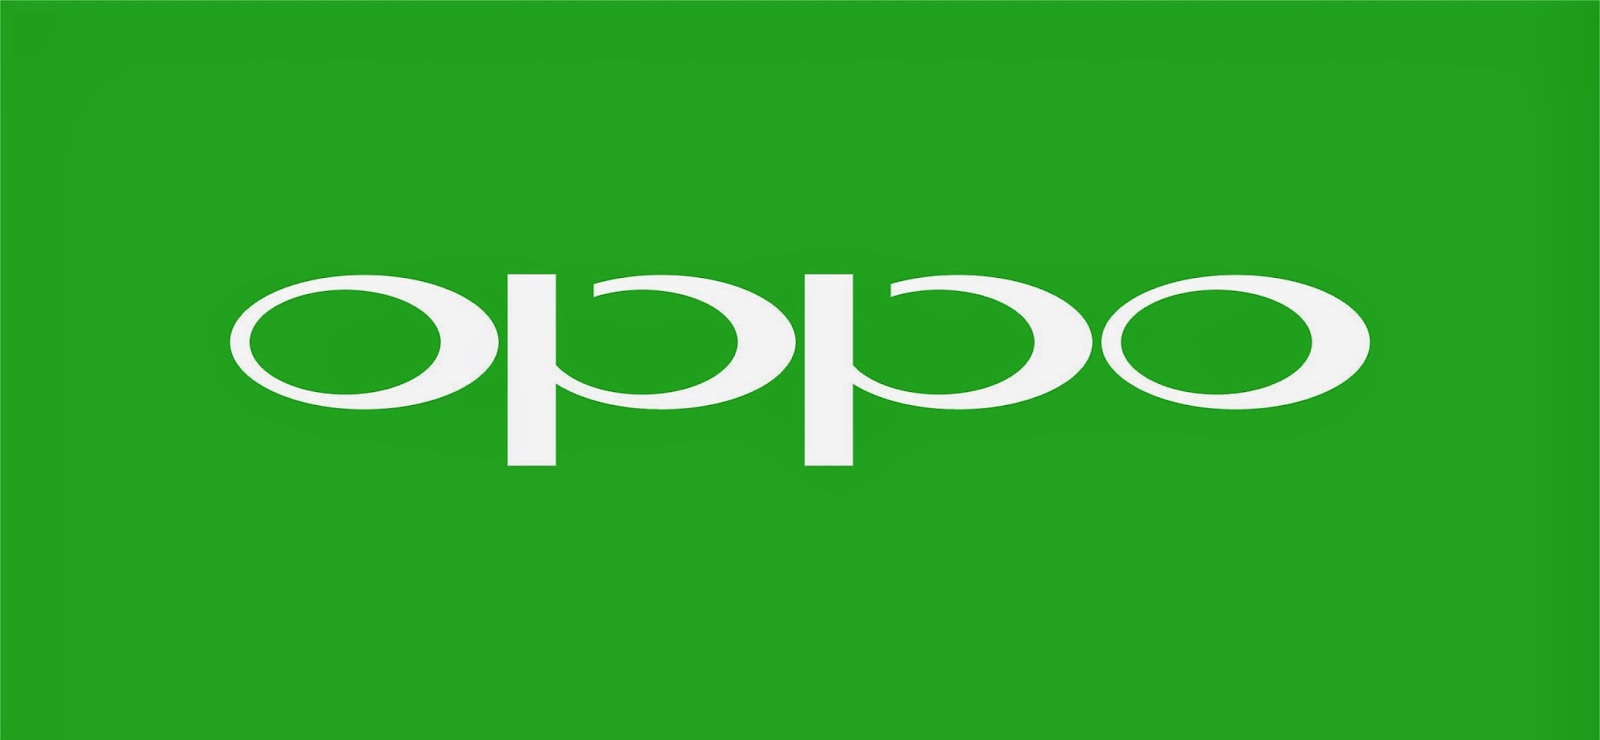 هواتف شركة Oppo ستطرح بقوة بجميع أسواق أمريكا قريباً